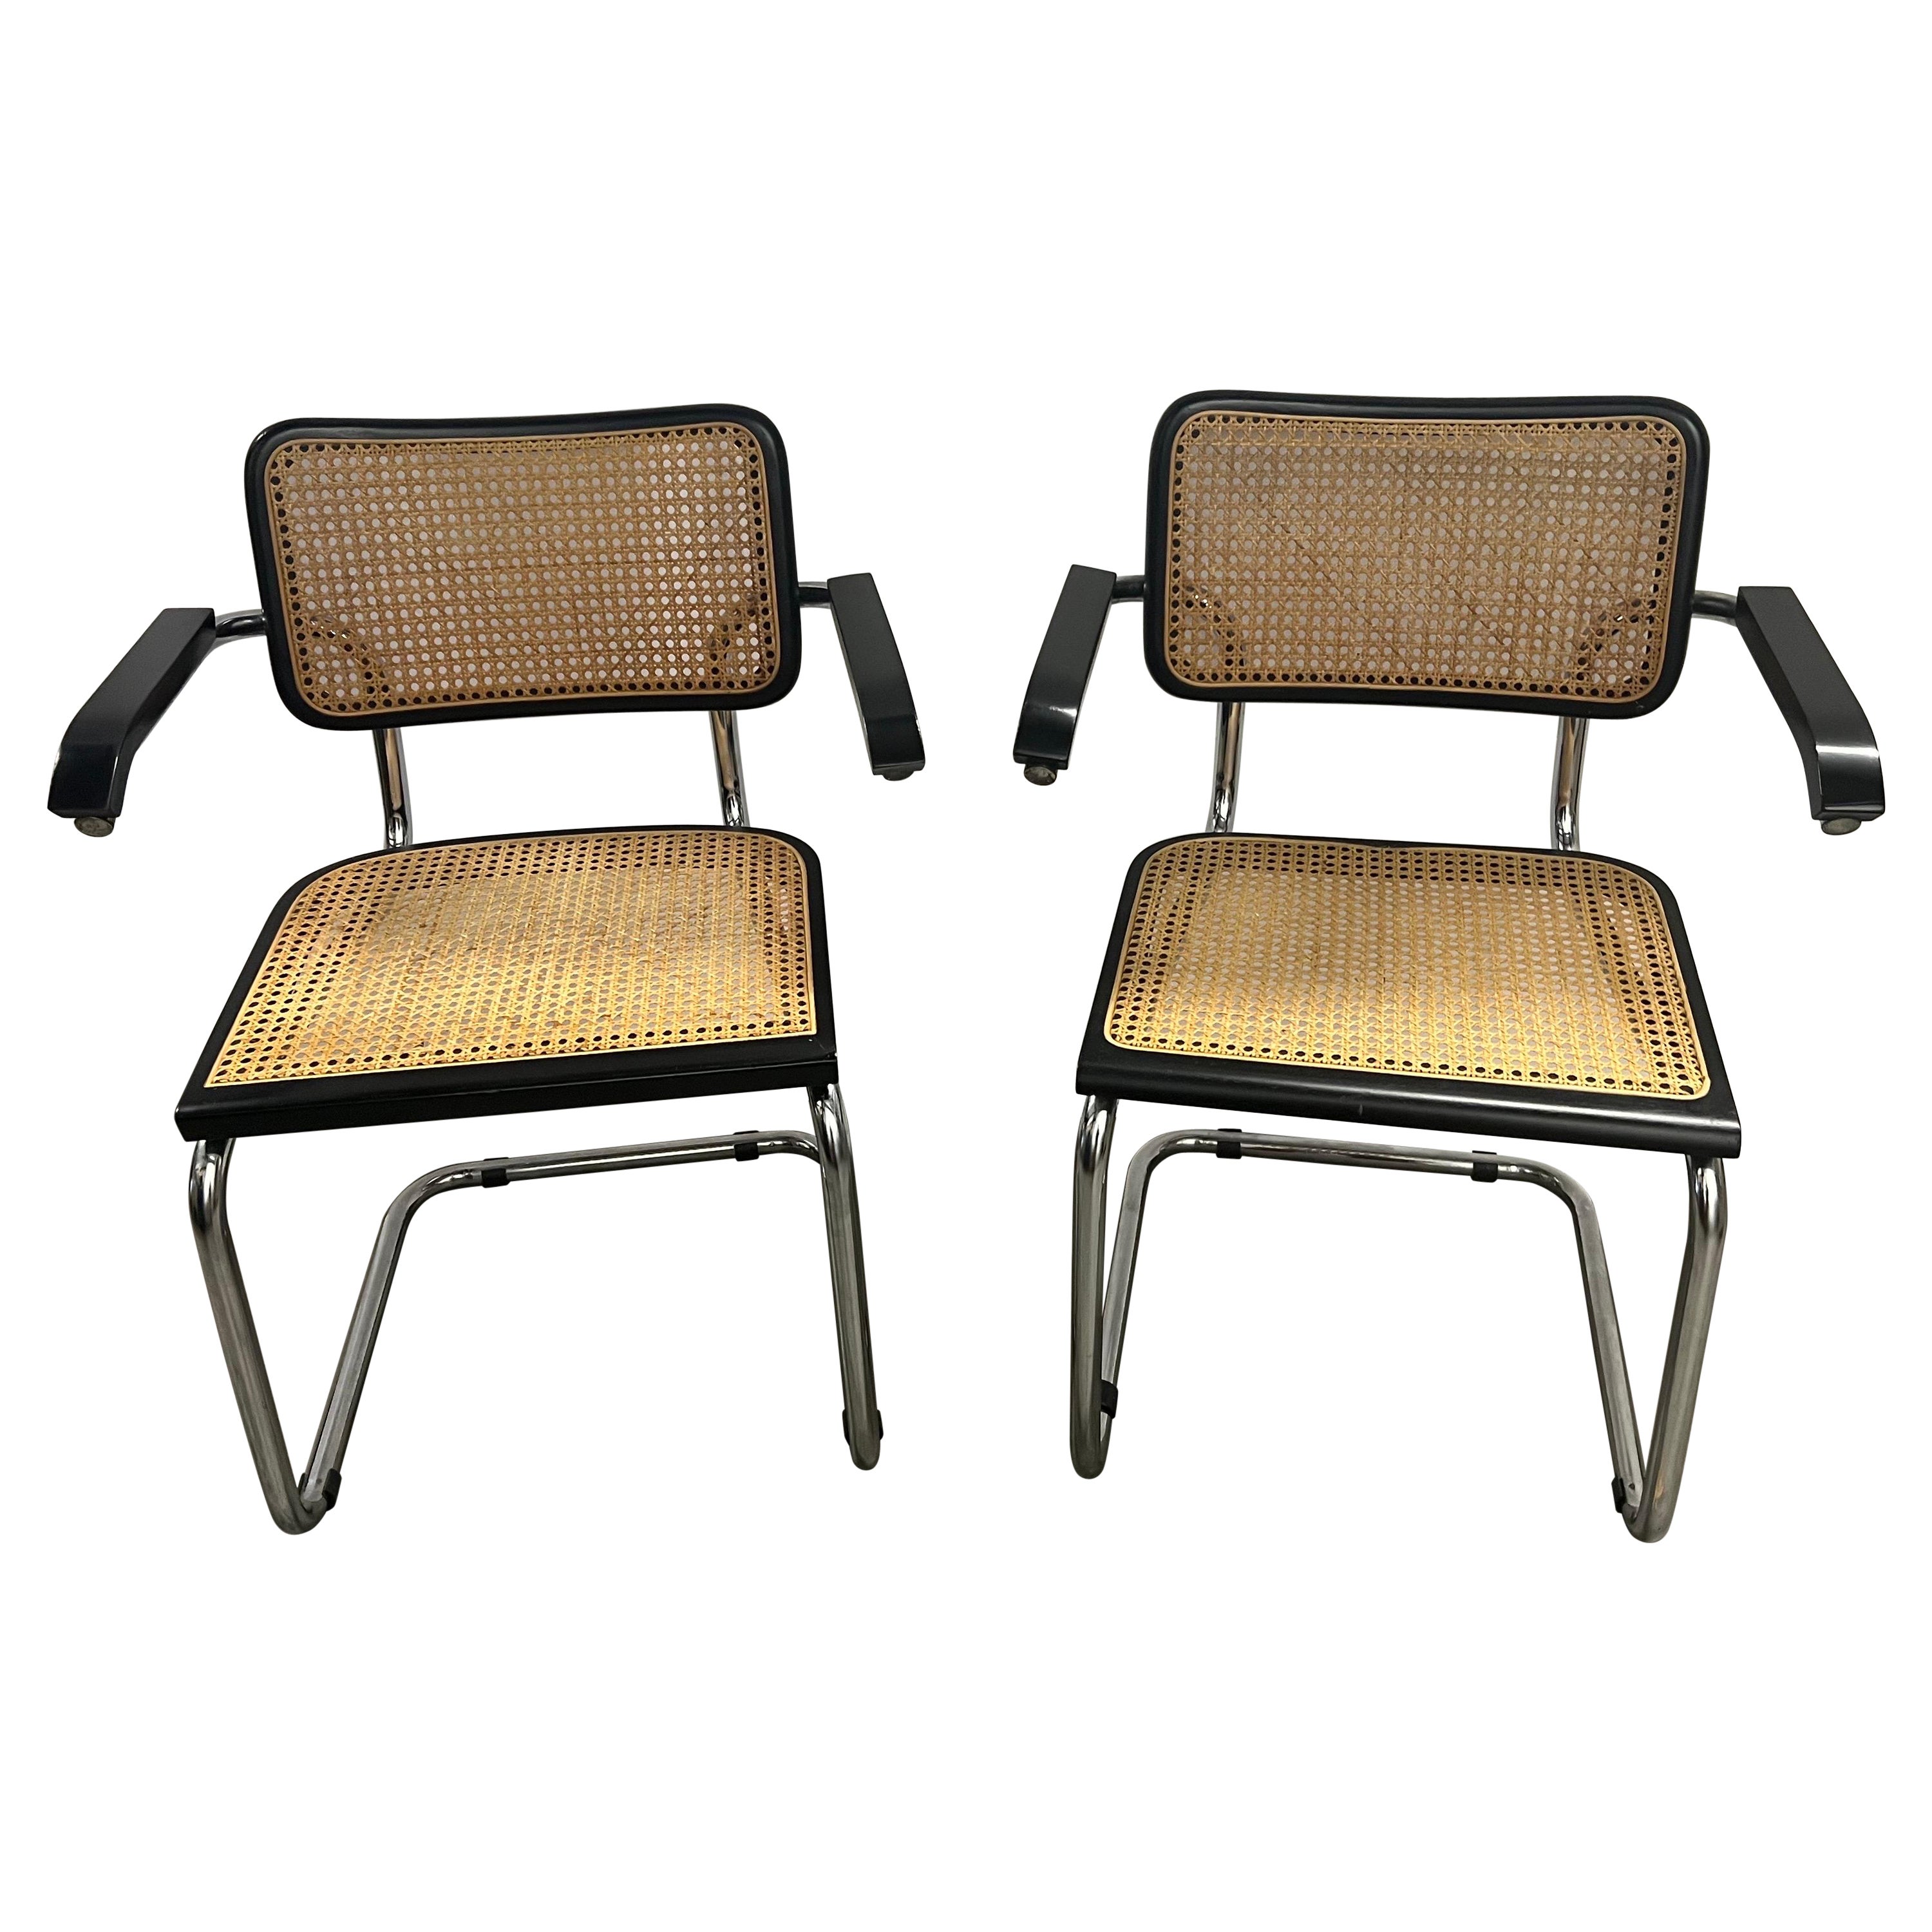 Bahaus Marcel Breuer chaise Cesca S64 